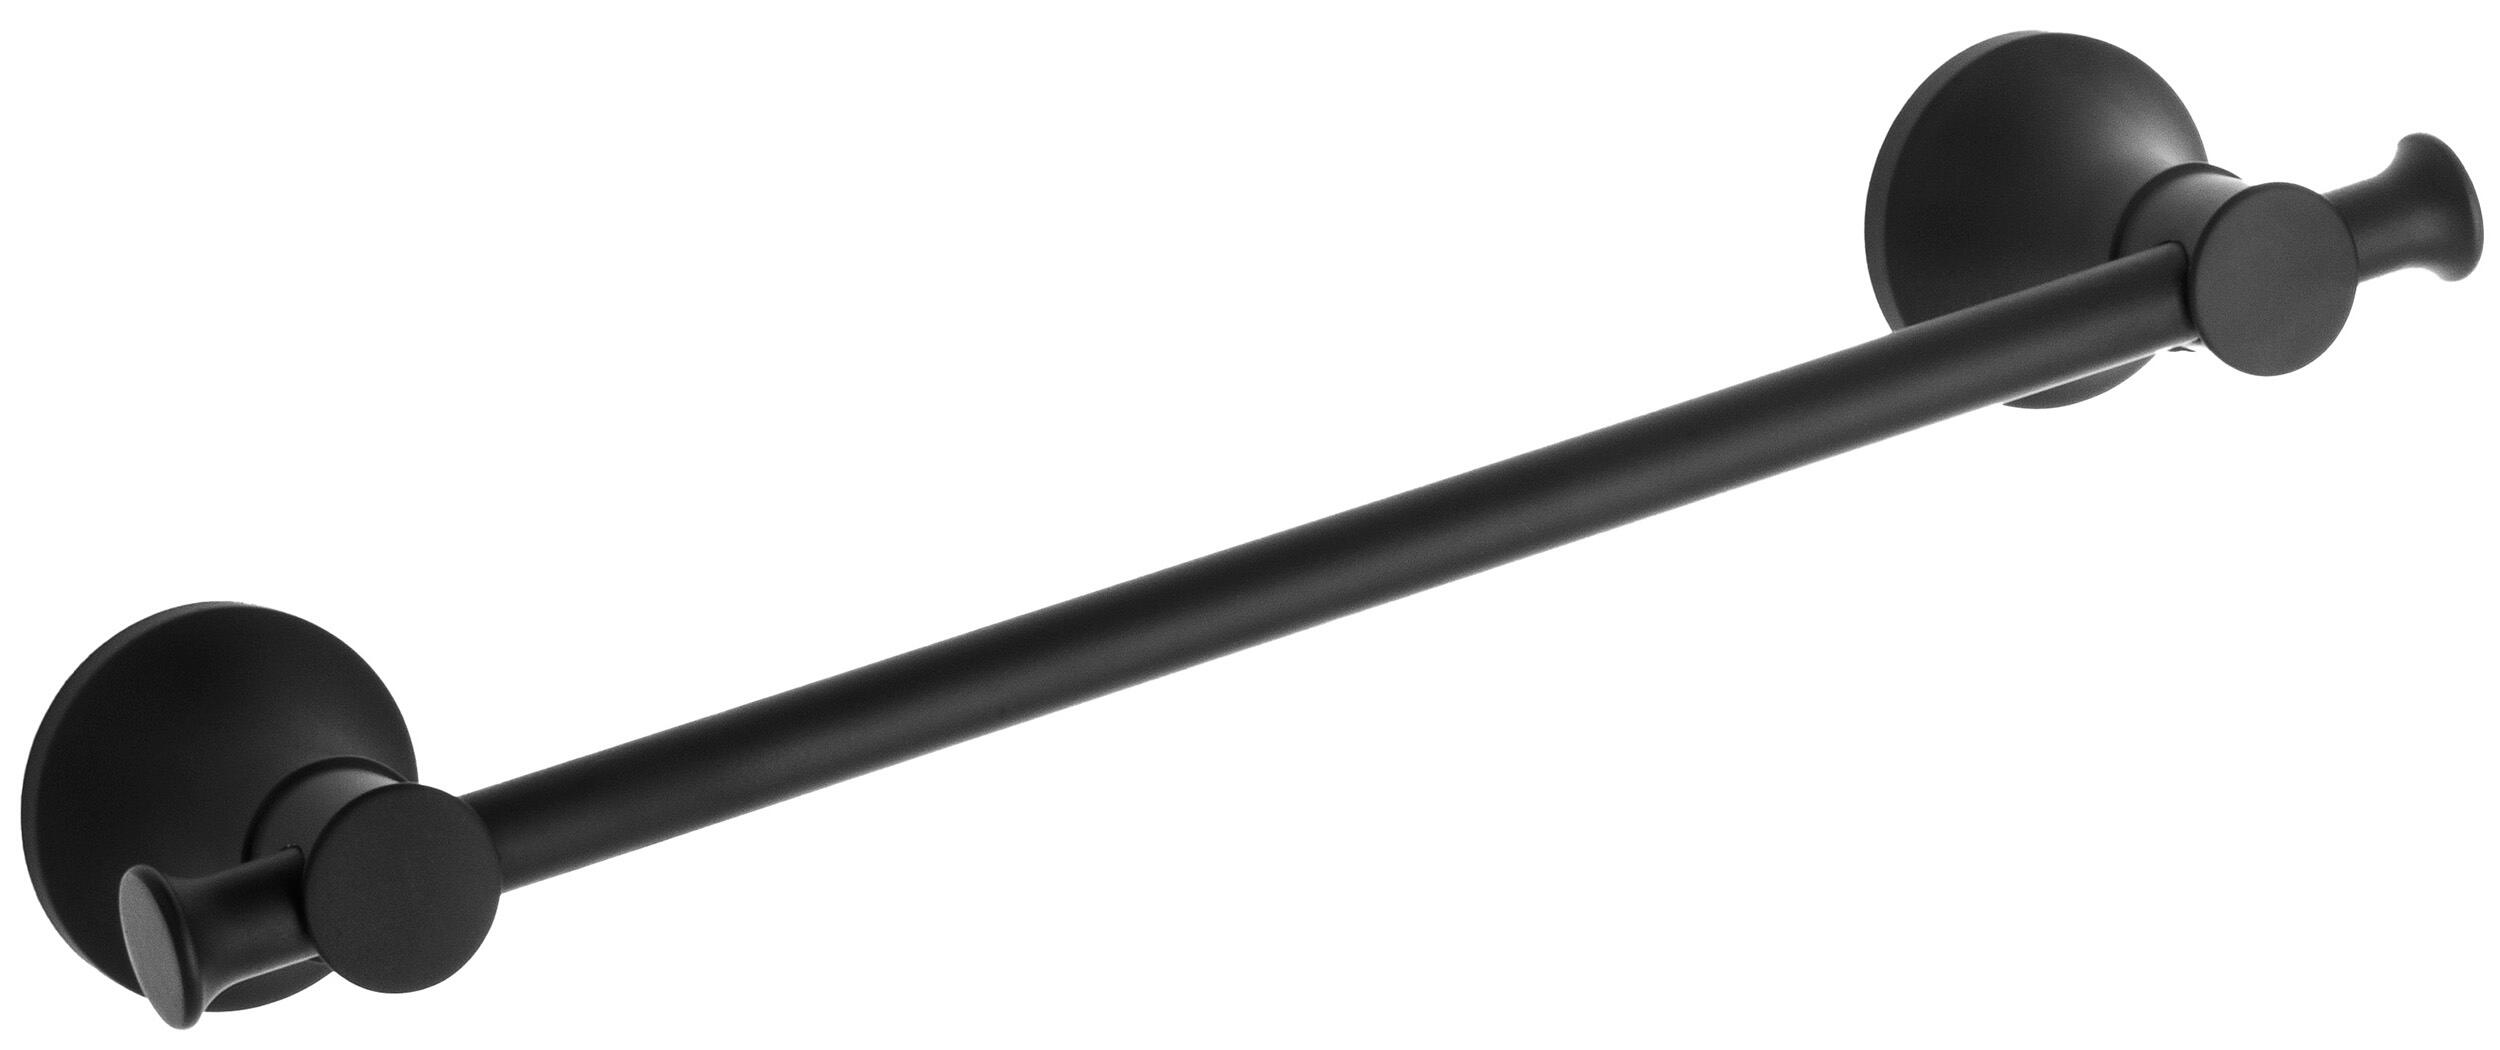 Toallero cardiff negro 35x5.5 cm